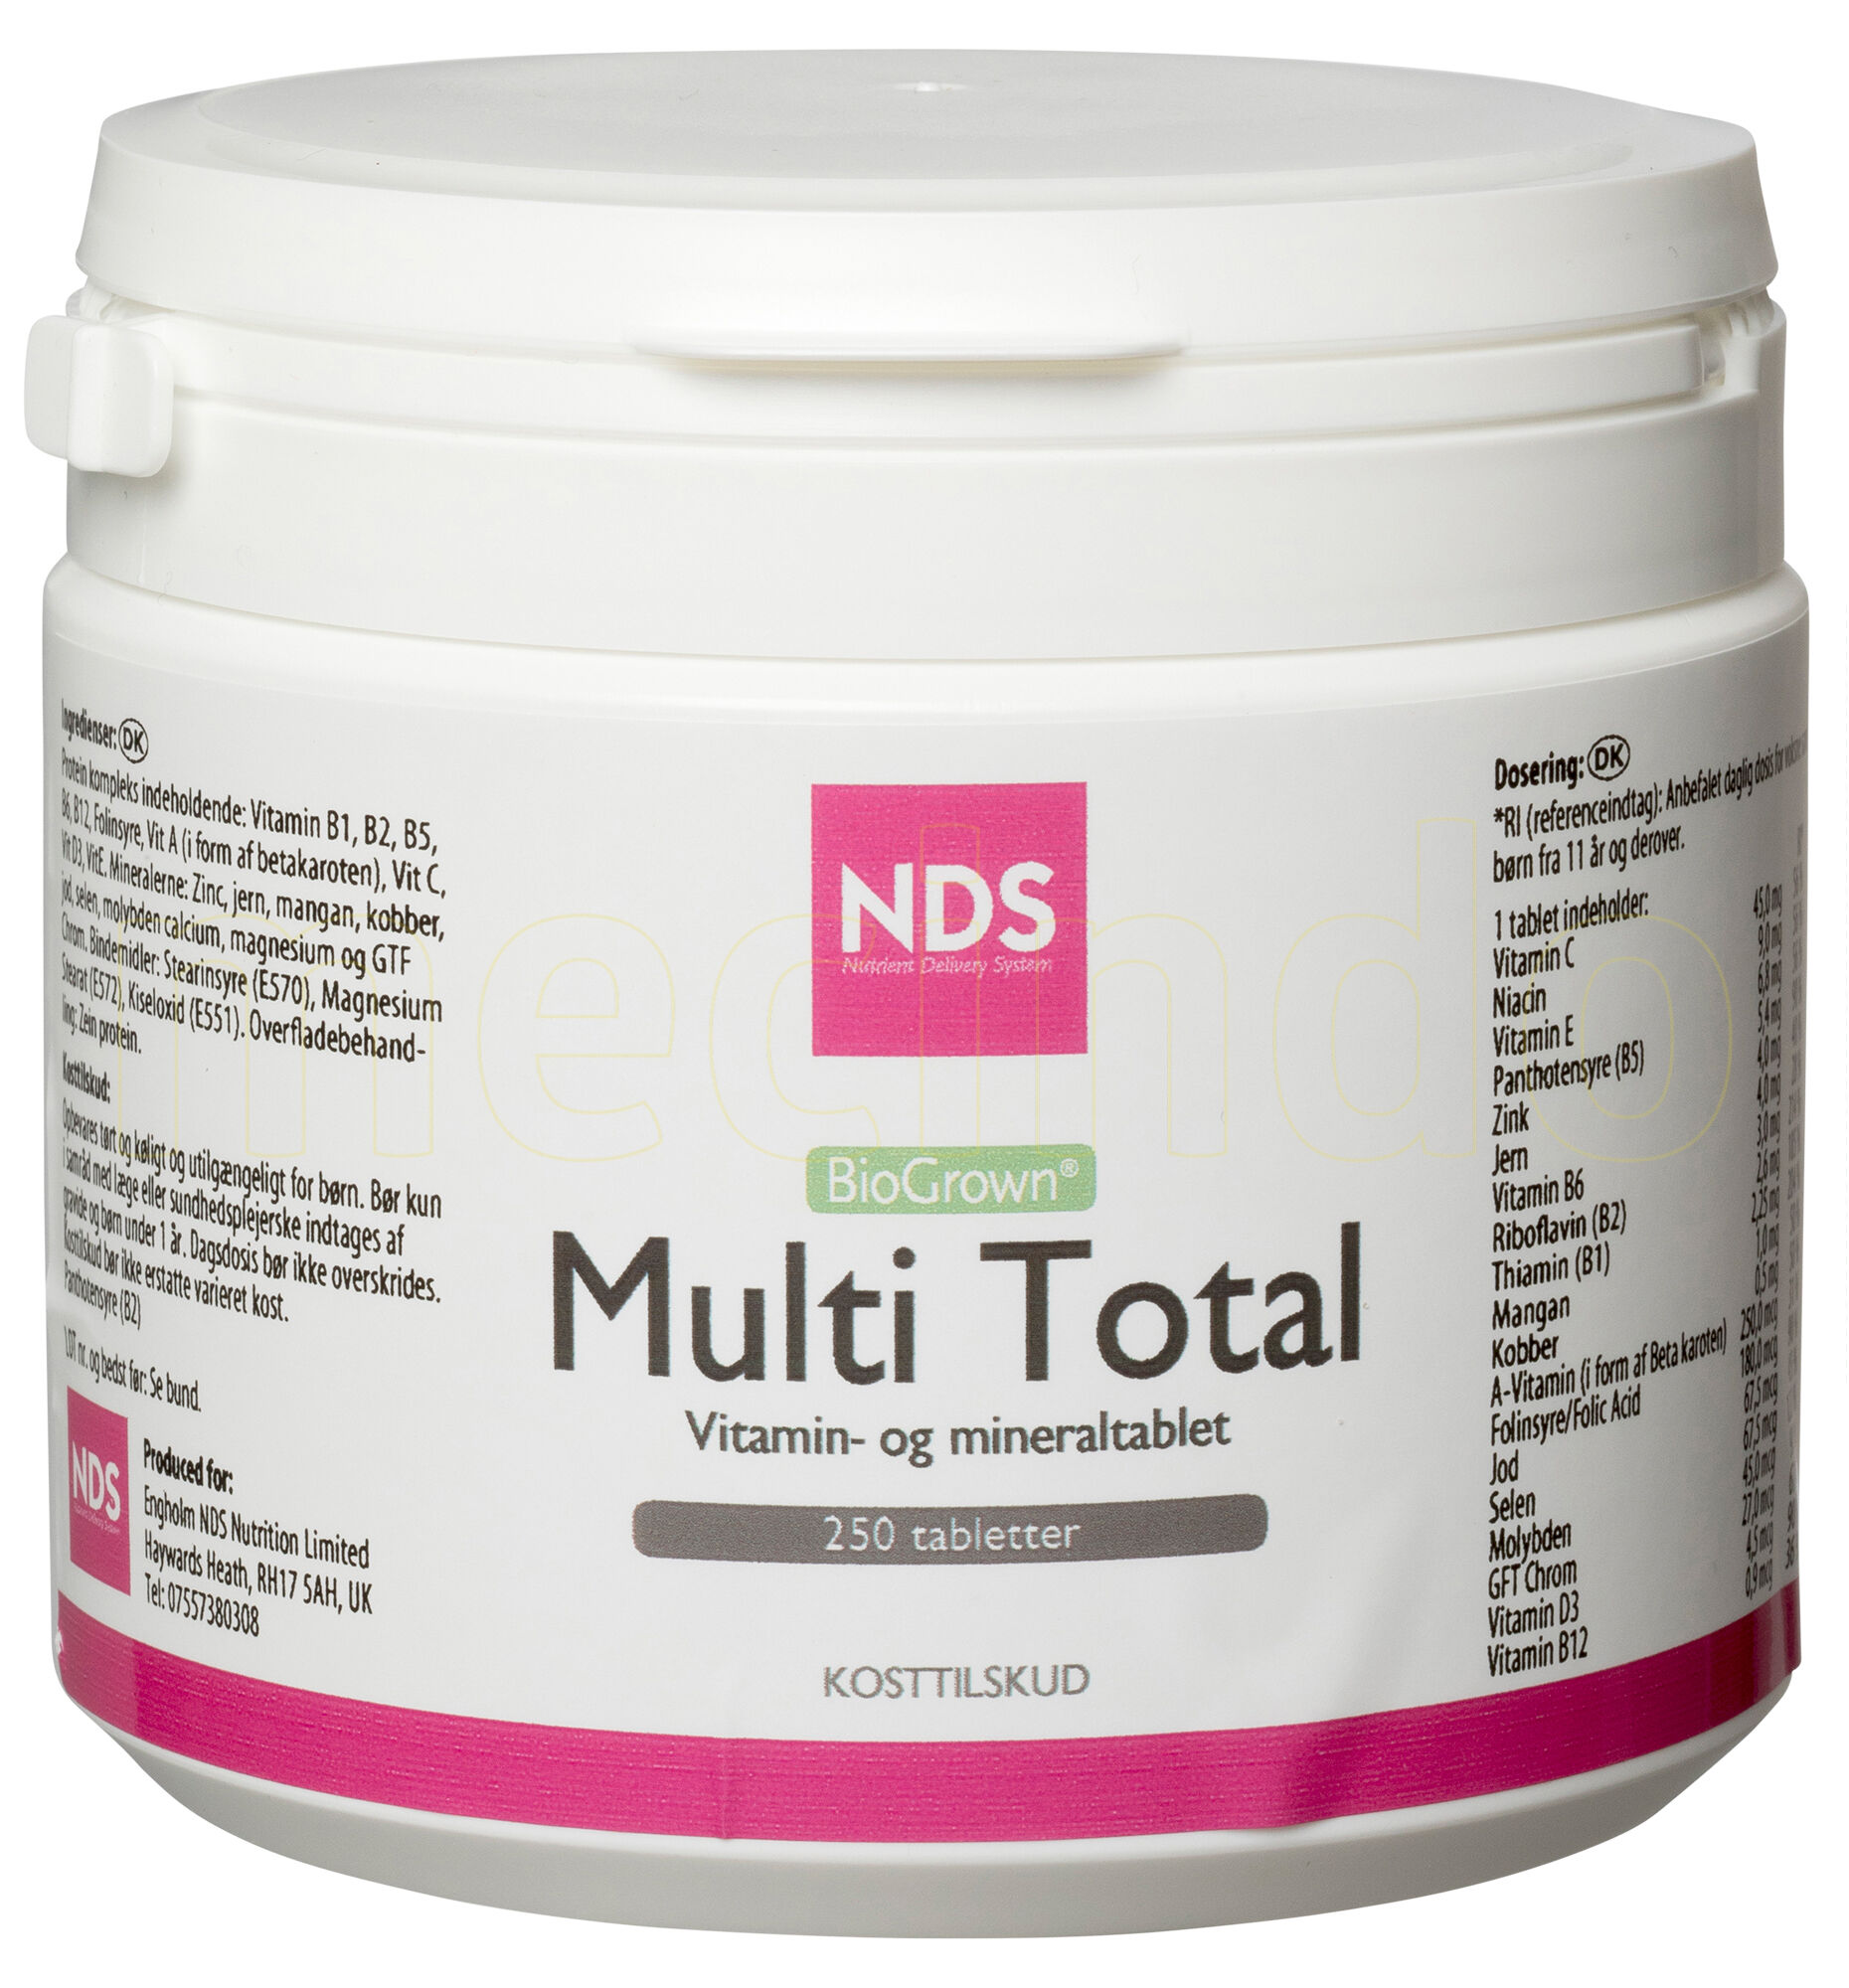 NDS Multitotal Vitamin Og Mineral - 250 Tabletter